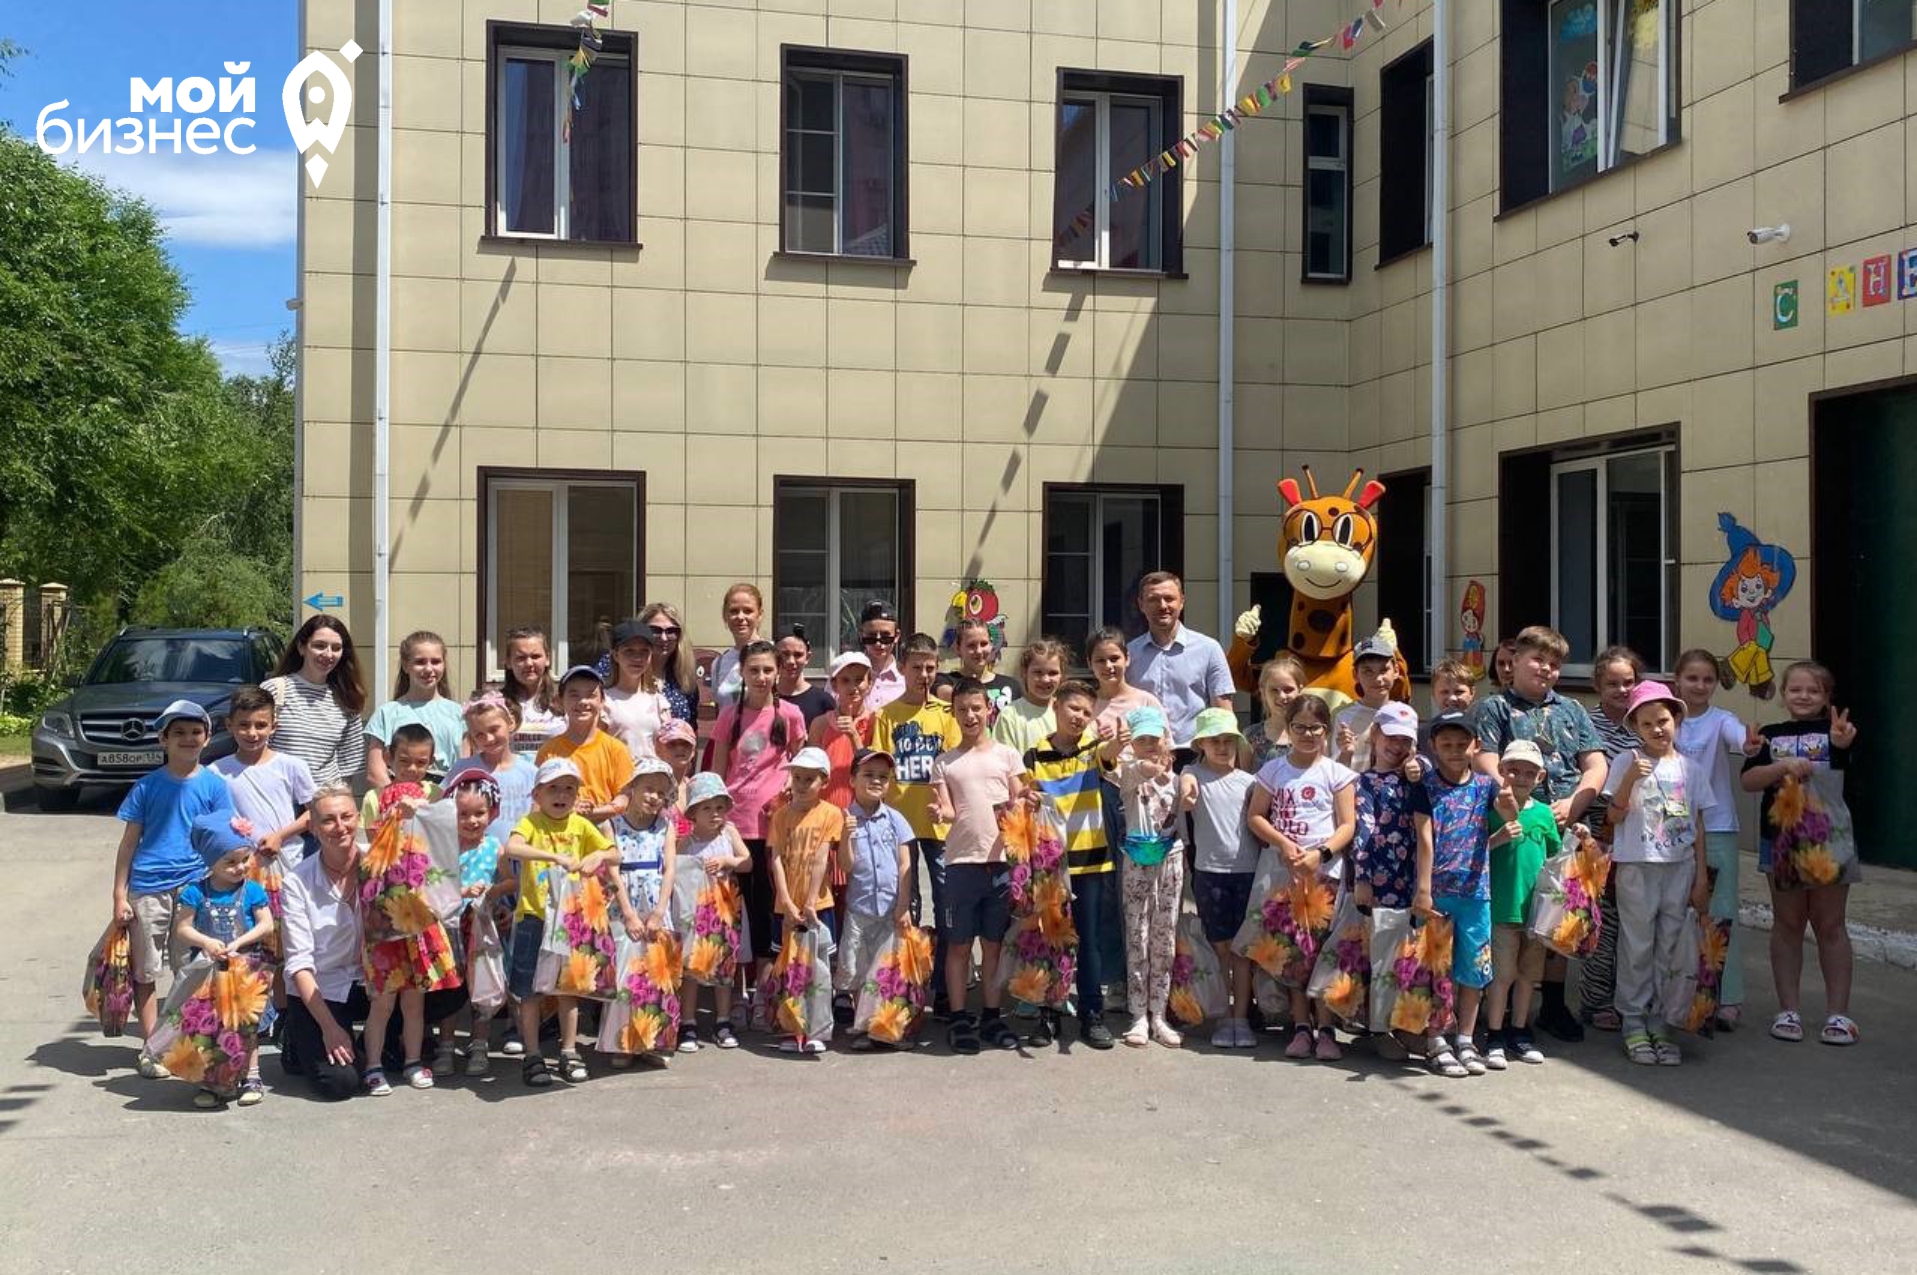 В Волгограде День защиты детей отметили с мастер-классами и подарками в рамках акции #Мойбизнеспомогает